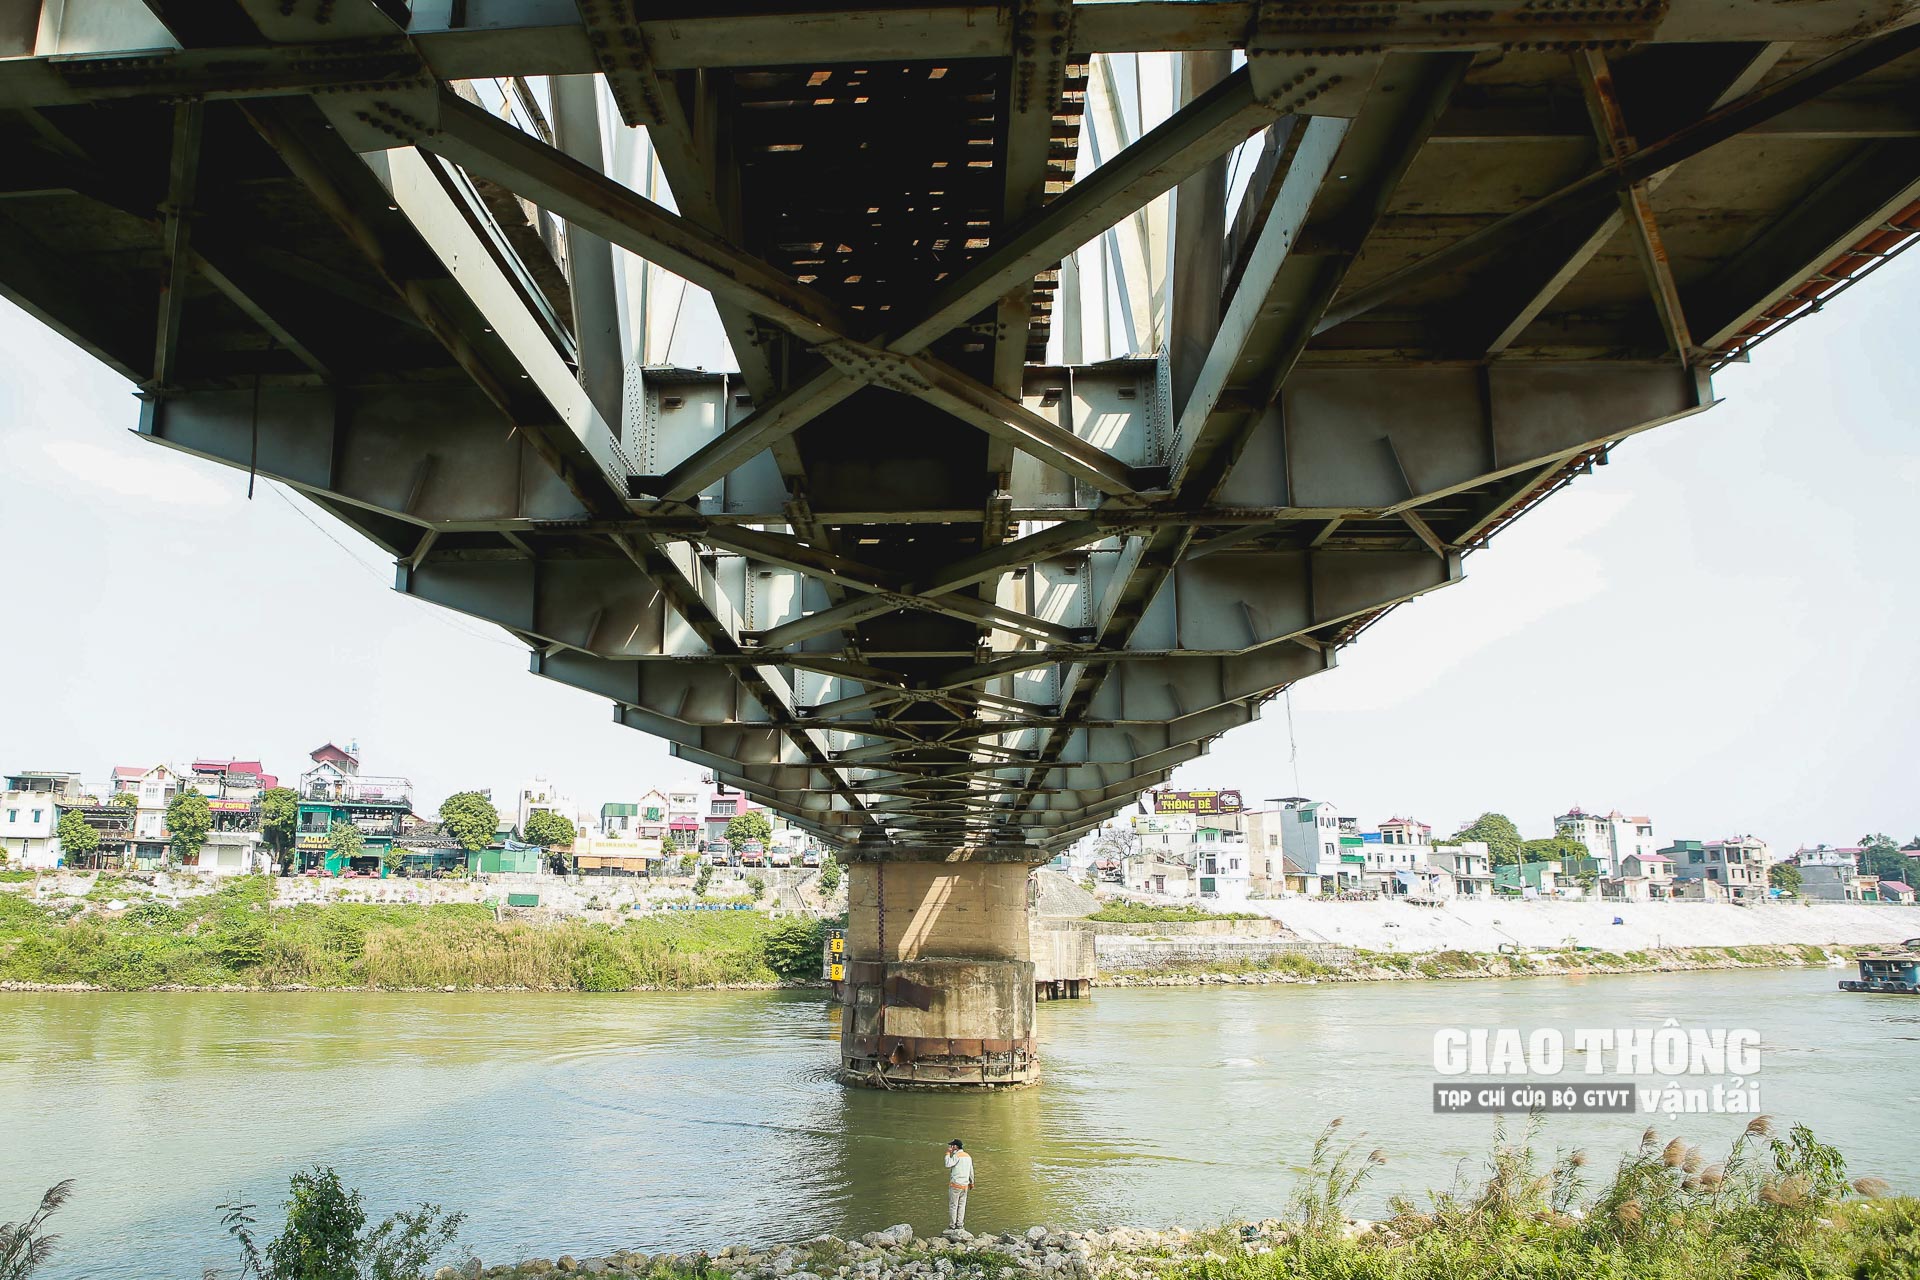 Lý giải về những điểm xuống cấp vẫn hiện hữu nhiều tháng nay trên cầu Đuống, Công ty Hà Hải cho biết, vốn duy tu cầu Đuống chủ yếu dành cho bảo trì đường sắt, trong khi vốn cho đường bộ không đáng kể nên phải cân đối, chỉ còn cách “hỏng đâu sửa đấy”.